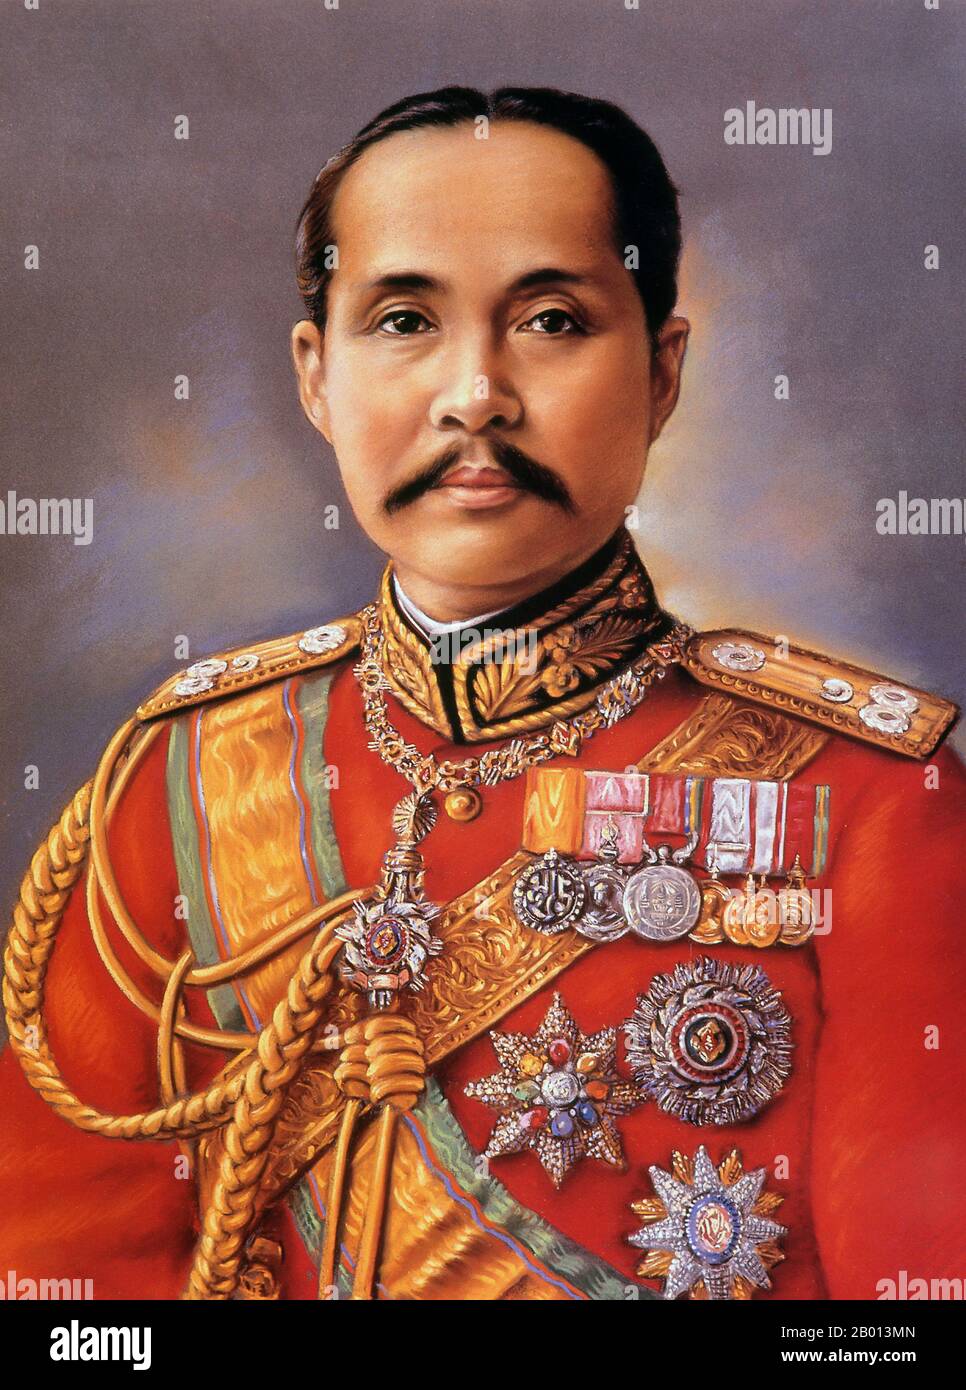 Thaïlande: Roi Rama V, Chulalongkorn (20 septembre 1853 – 23 octobre 1910) , 5e monarque de la dynastie Chakri. Peinture à l'huile sur toile, fin du XIXe - début du XXe siècle. Phra Bat Somdet Phra Poramintharamaha Chulalongkorn Phra Chunla Chom Klao Chao Yu Hua, ou Rama V était le cinquième monarque de Siam sous la Maison de Chakri. Il est considéré comme l'un des plus grands rois de Siam. Son règne fut caractérisé par la modernisation de Siam, l'immense gouvernement et les réformes sociales, et les cessions territoriales à l'Empire britannique et à l'Indochine française. Banque D'Images